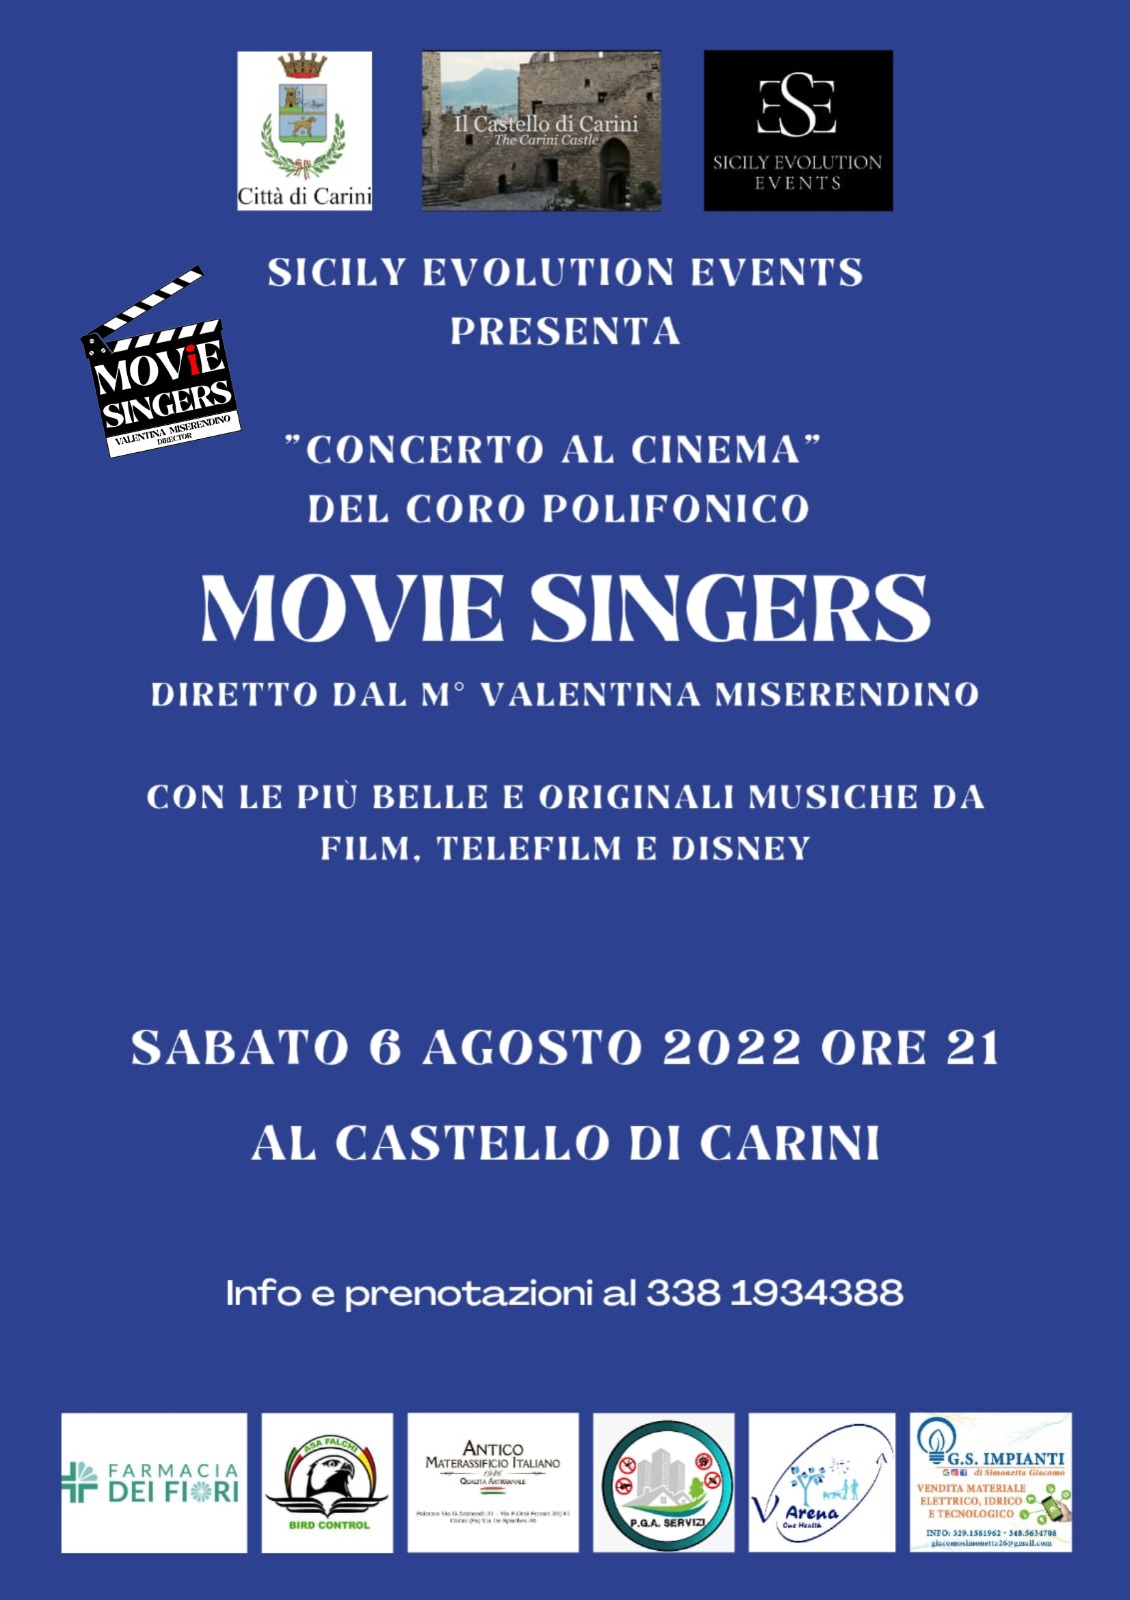 “Concerto al cinema” al Castello di Carini, sabato 6 agosto esibizione del coro polifonico “Movie Singers” a cura di “Sicily Evolution Events”